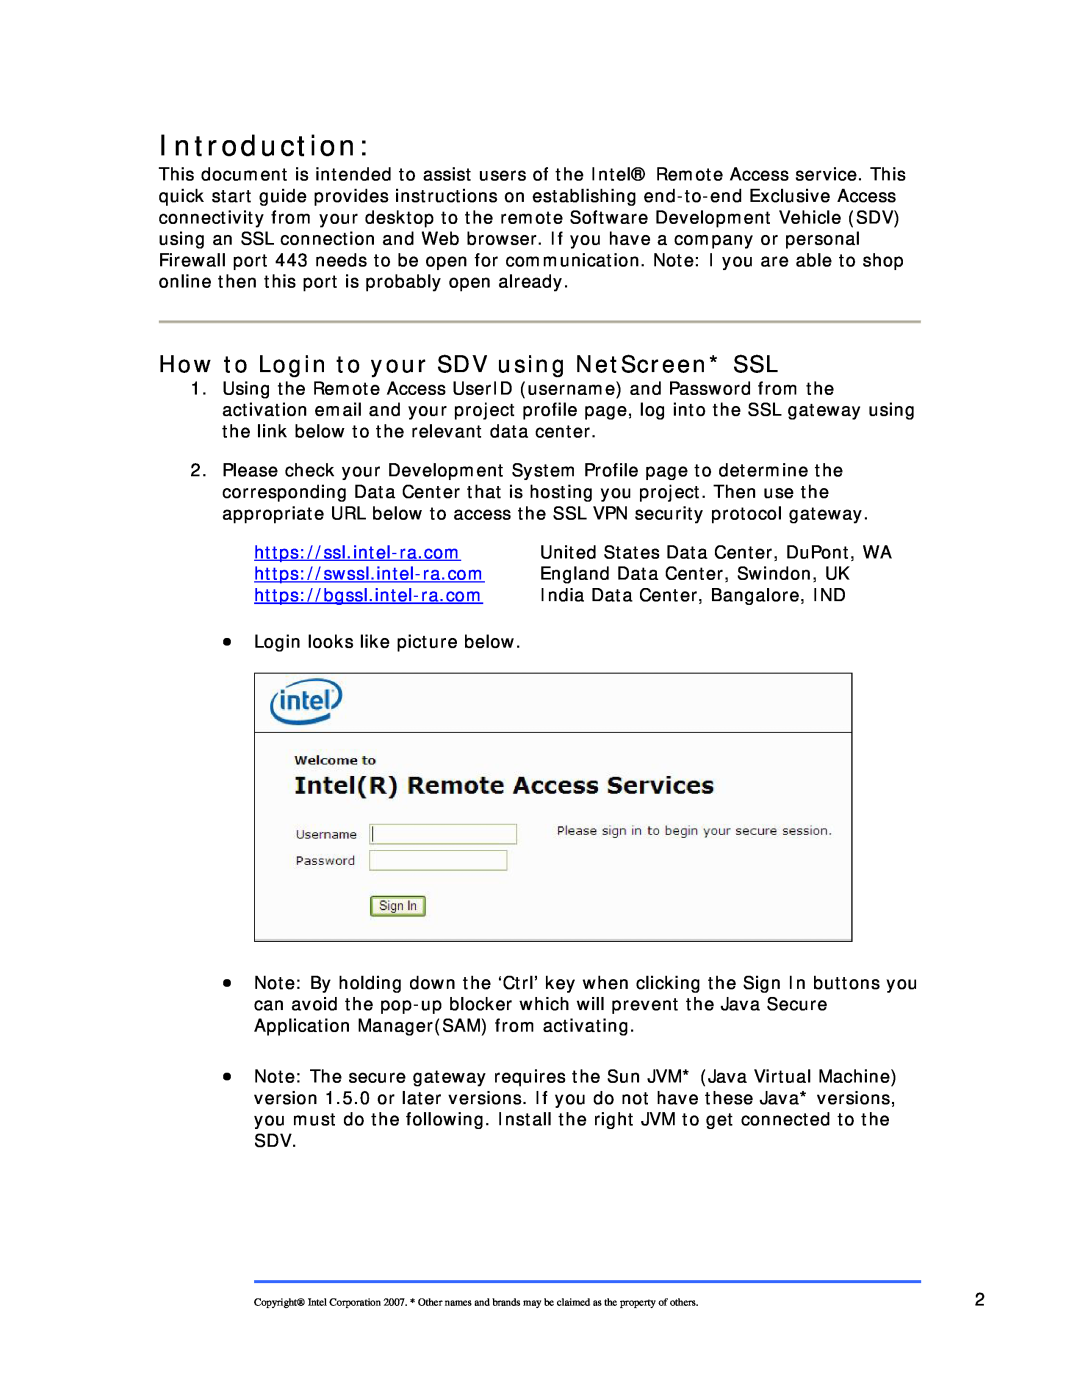 Intel 120000 United States Data Center, DuPont, WA, England Data Center, Swindon, UK, India Data Center, Bangalore, IND 